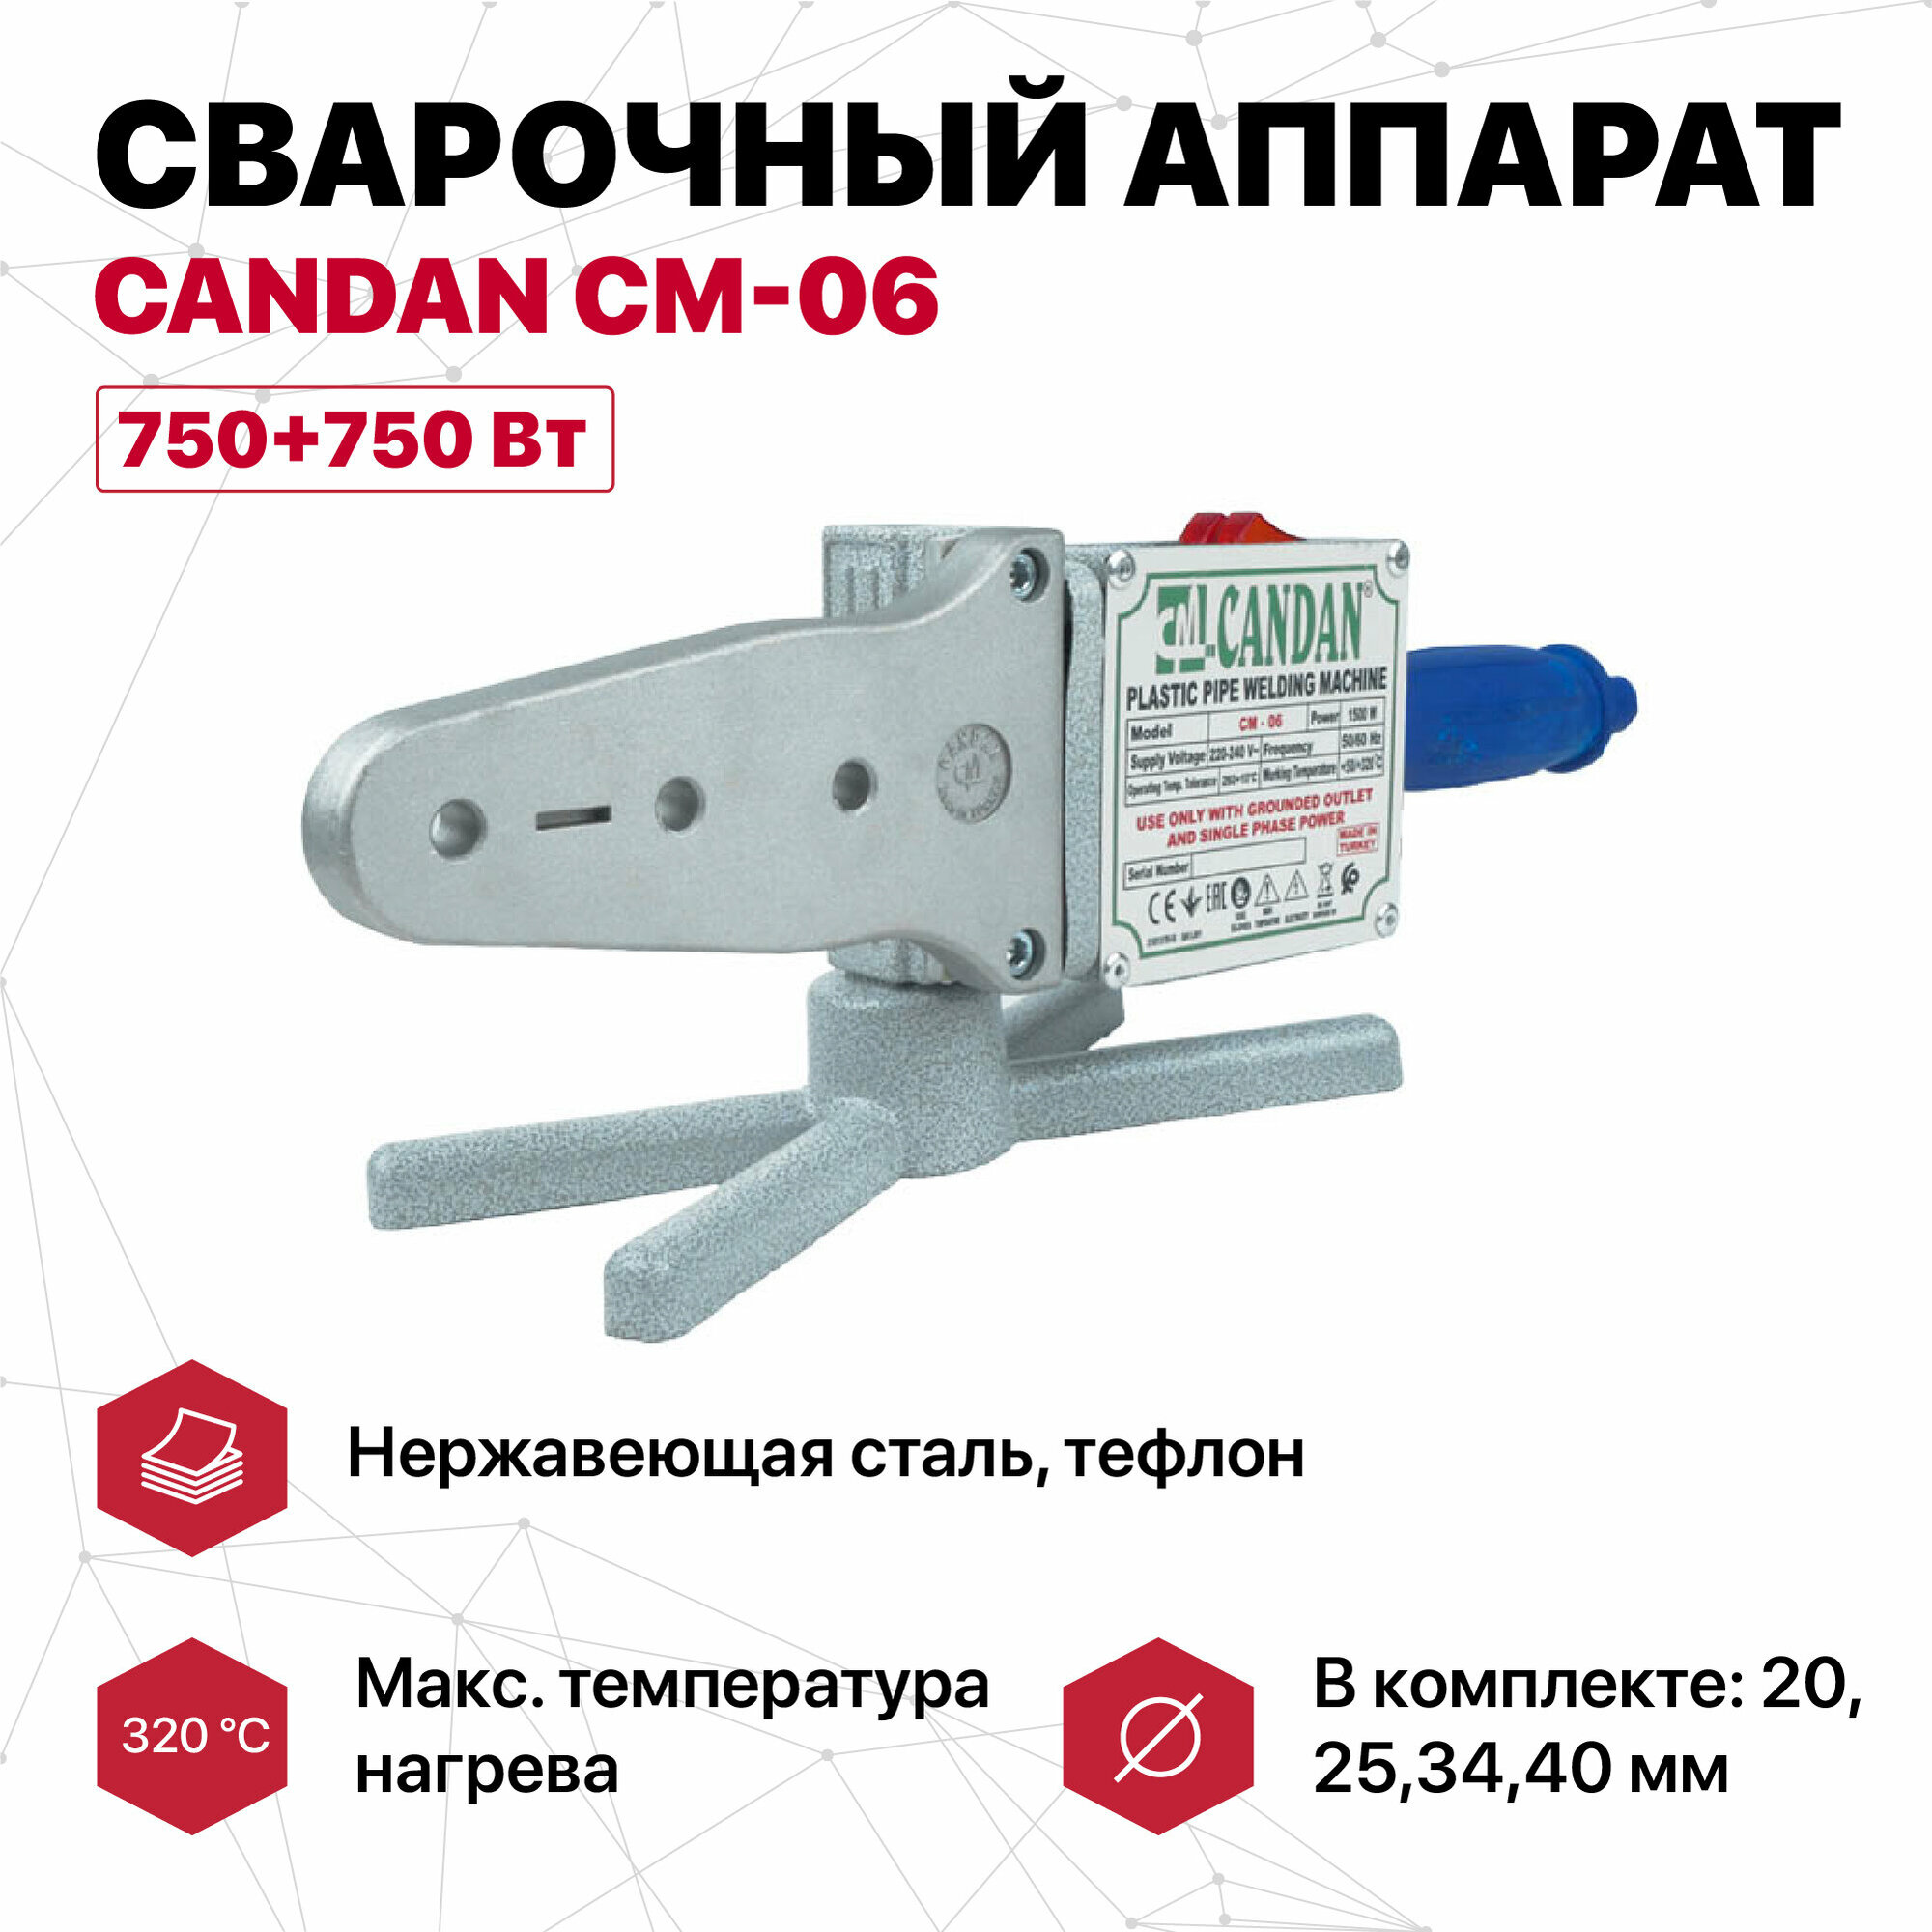 Сварочный аппарат CANDAN СМ-06 (20,25,34,40) 750+750 Вт